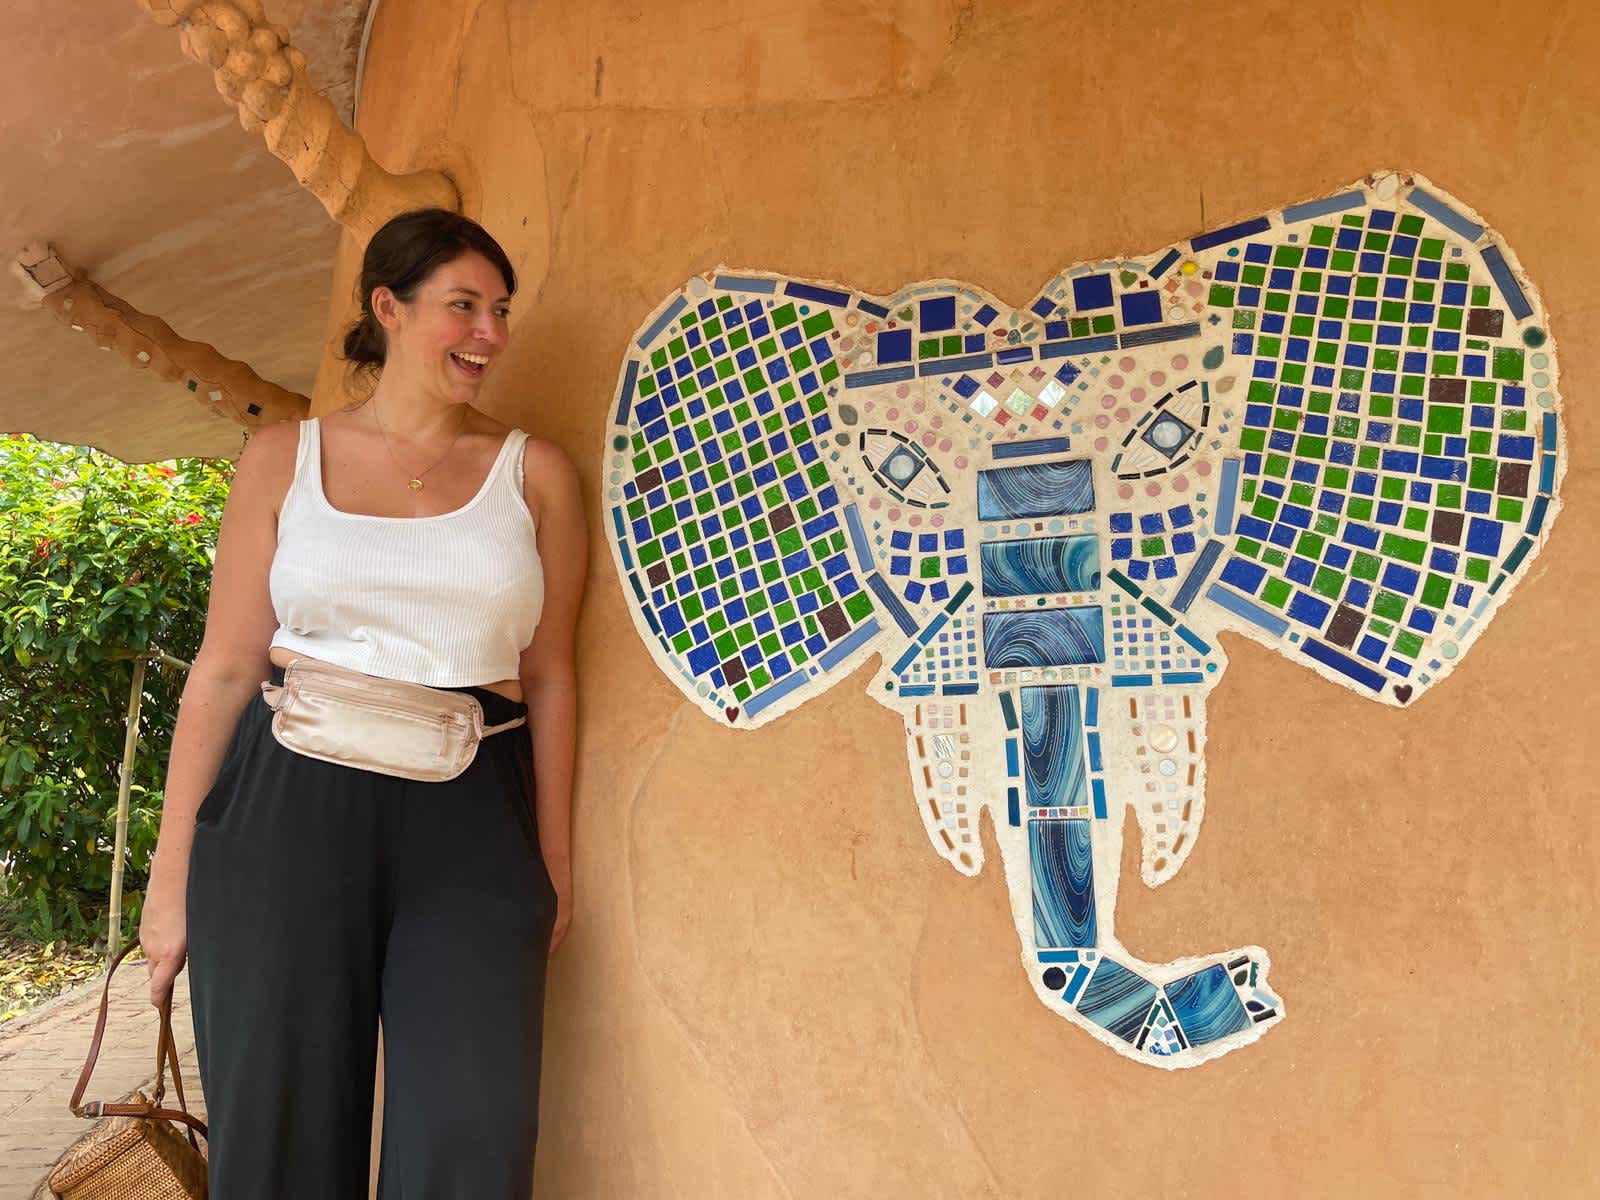 Maren qui pose à côté d'un dessin sur le mur fait avec de la mosaique d'un éléphant